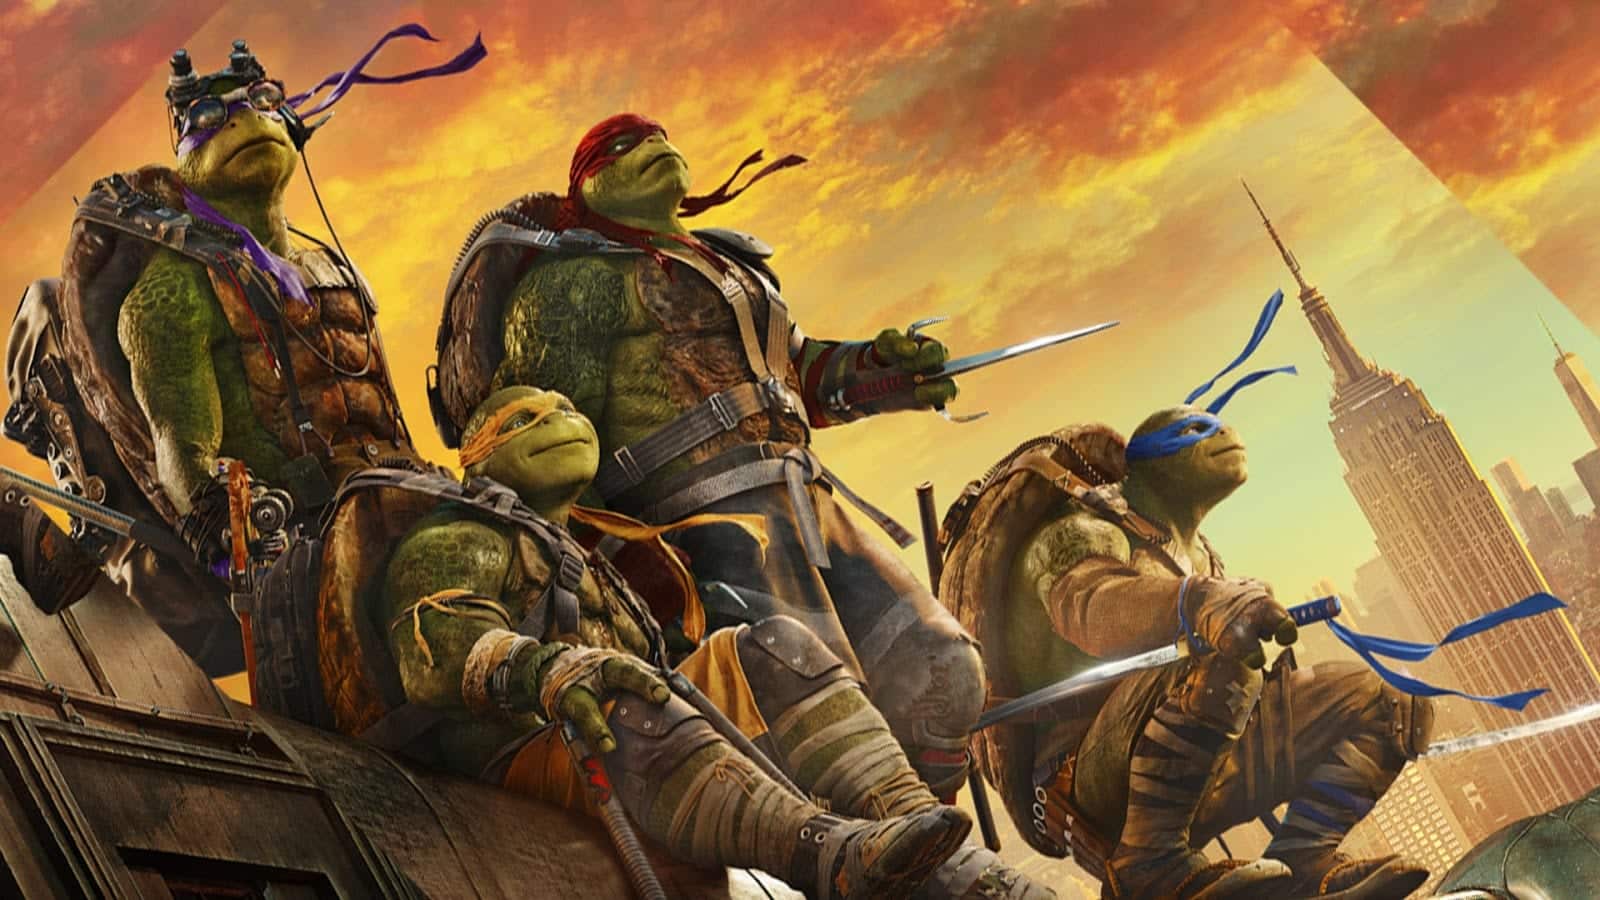  Ninja Turtles - Hela historien, karaktärer och filmer